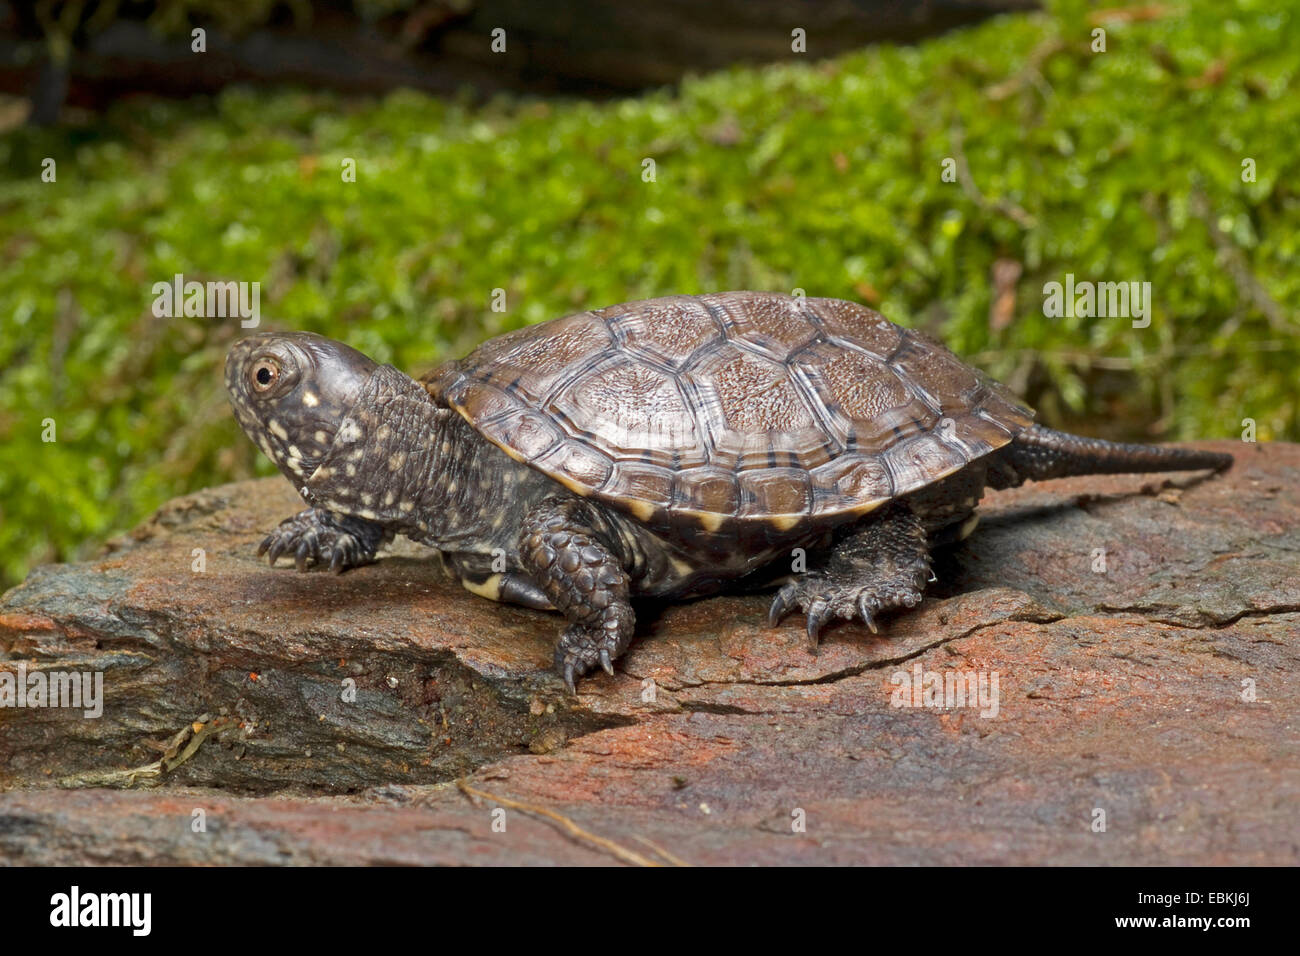 European pond terrapin, European pond turtle, European pond tortoise (Emys orbicularis), young European pond terrapin Stock Photo